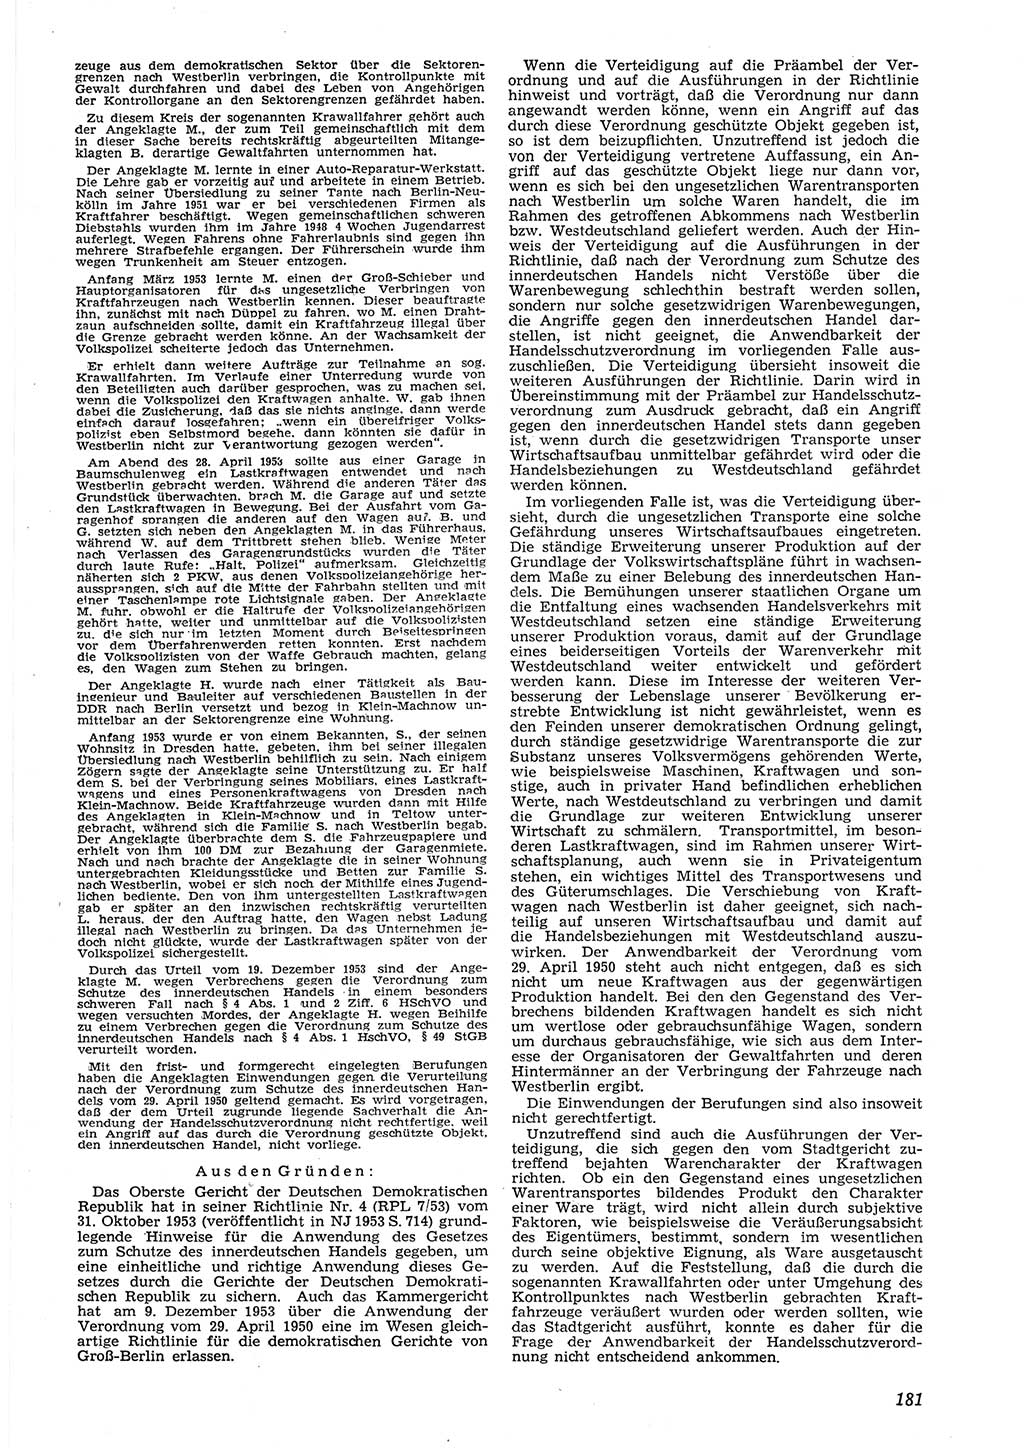 Neue Justiz (NJ), Zeitschrift für Recht und Rechtswissenschaft [Deutsche Demokratische Republik (DDR)], 8. Jahrgang 1954, Seite 181 (NJ DDR 1954, S. 181)